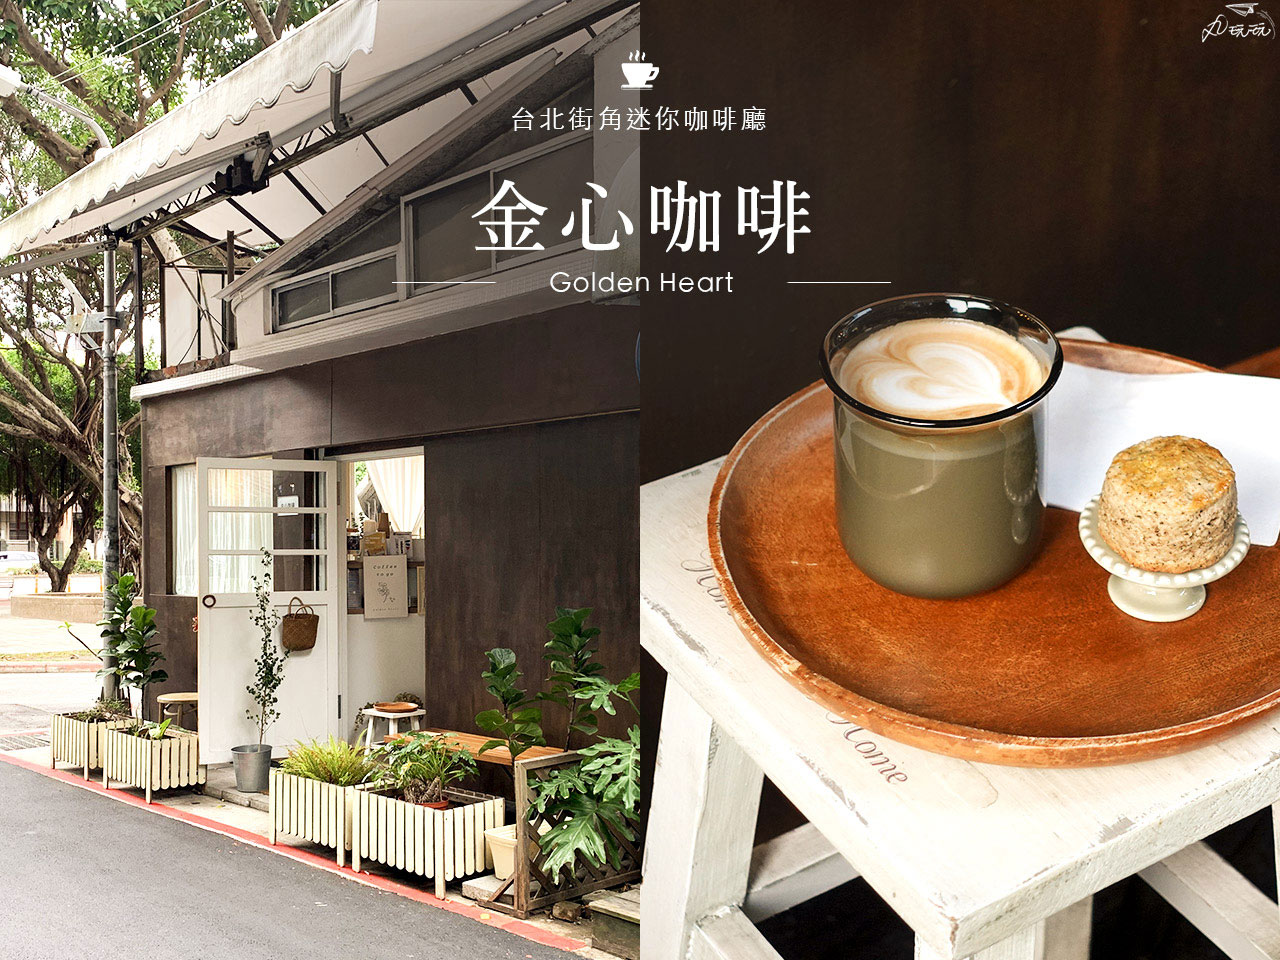 [食記] 台北中山 金心珈琲 療癒系迷你街角咖啡廳